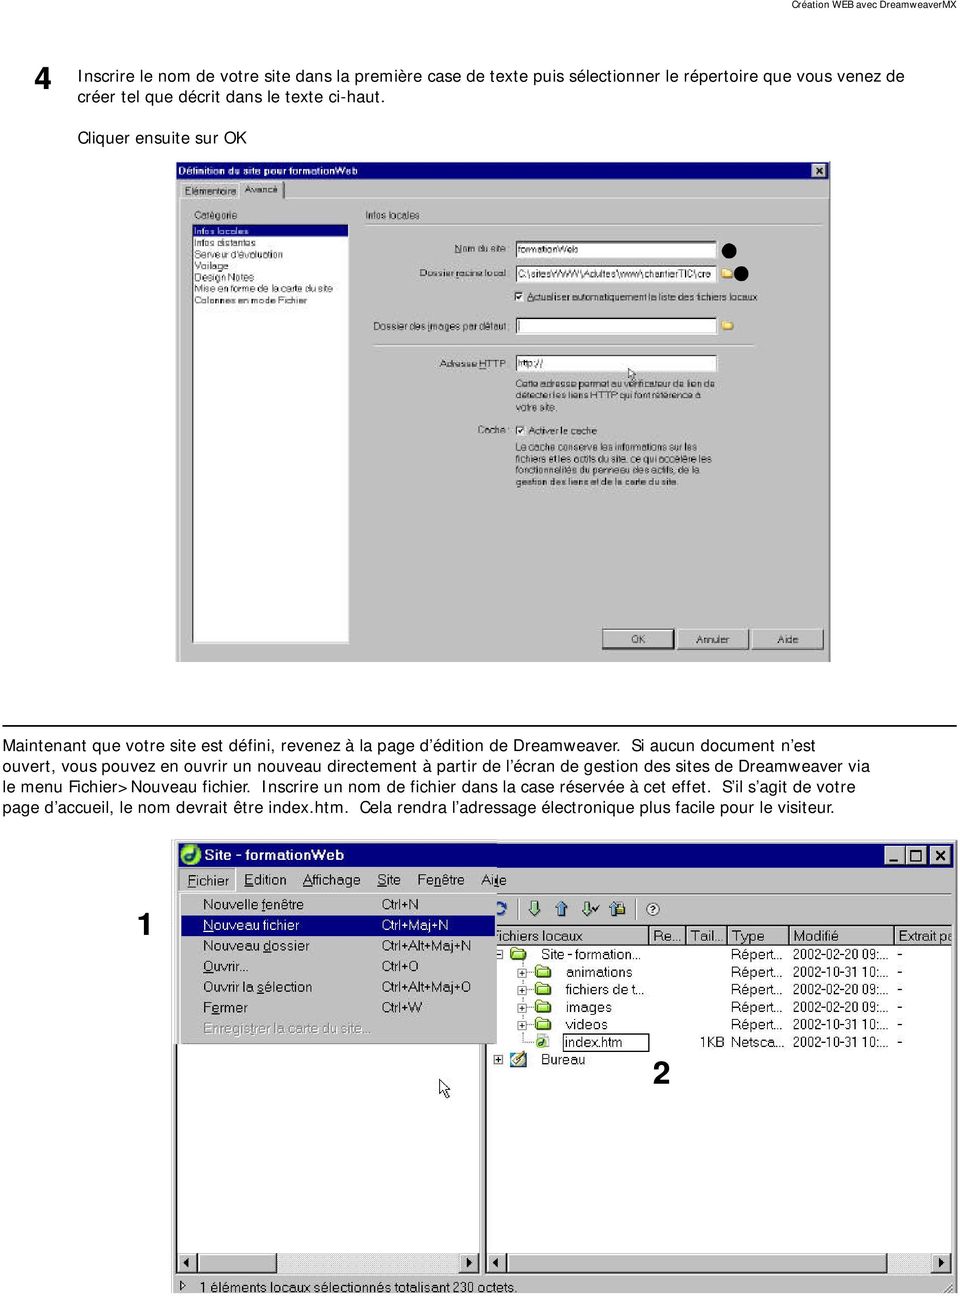 Si aucun document n est ouvert, vous pouvez en ouvrir un nouveau directement à partir de l écran de gestion des sites de Dreamweaver via le menu Fichier>Nouveau